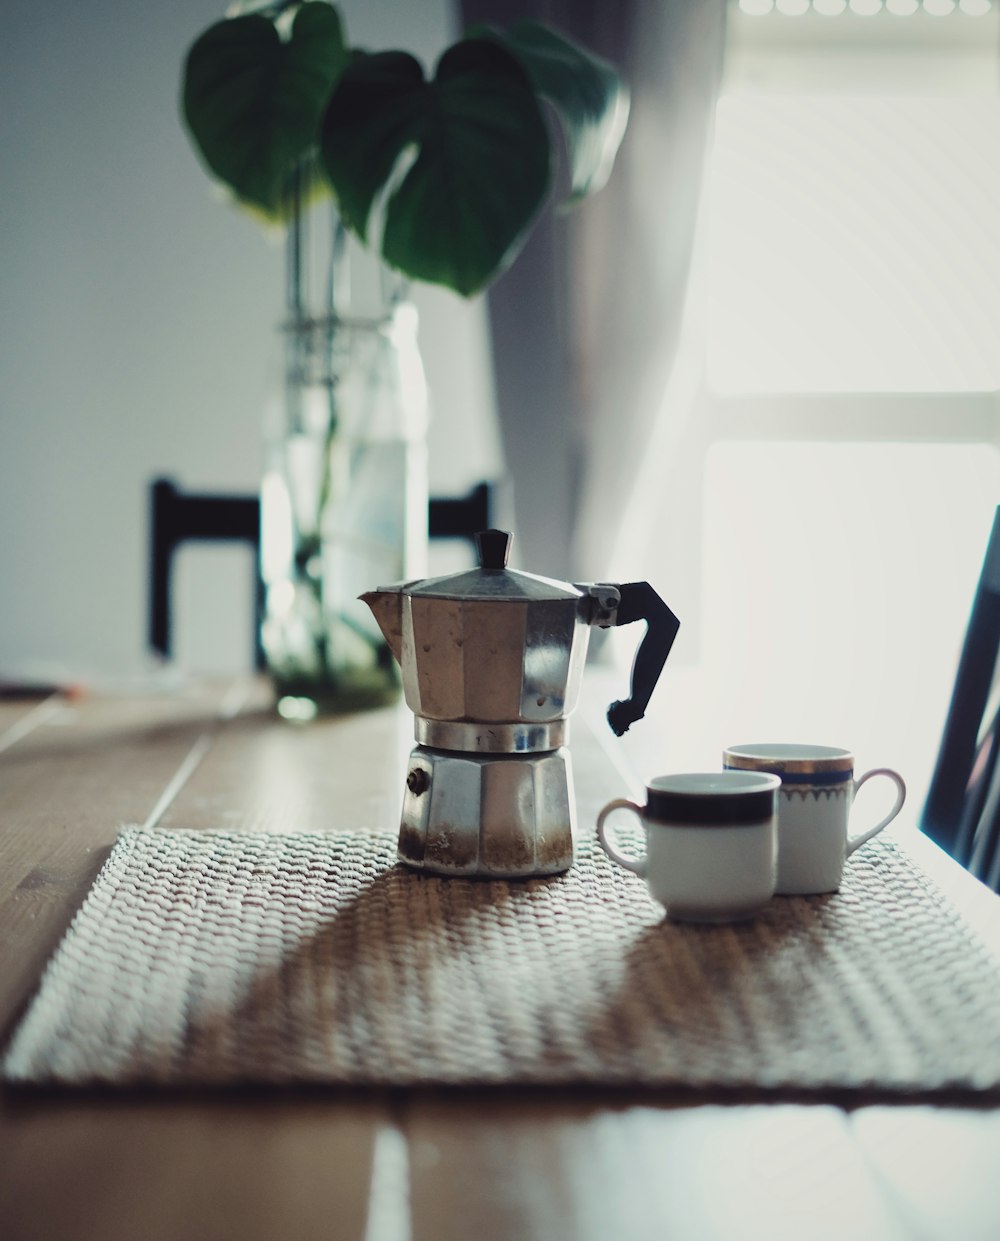 stainless steel teapot beside white ceramic mug on table